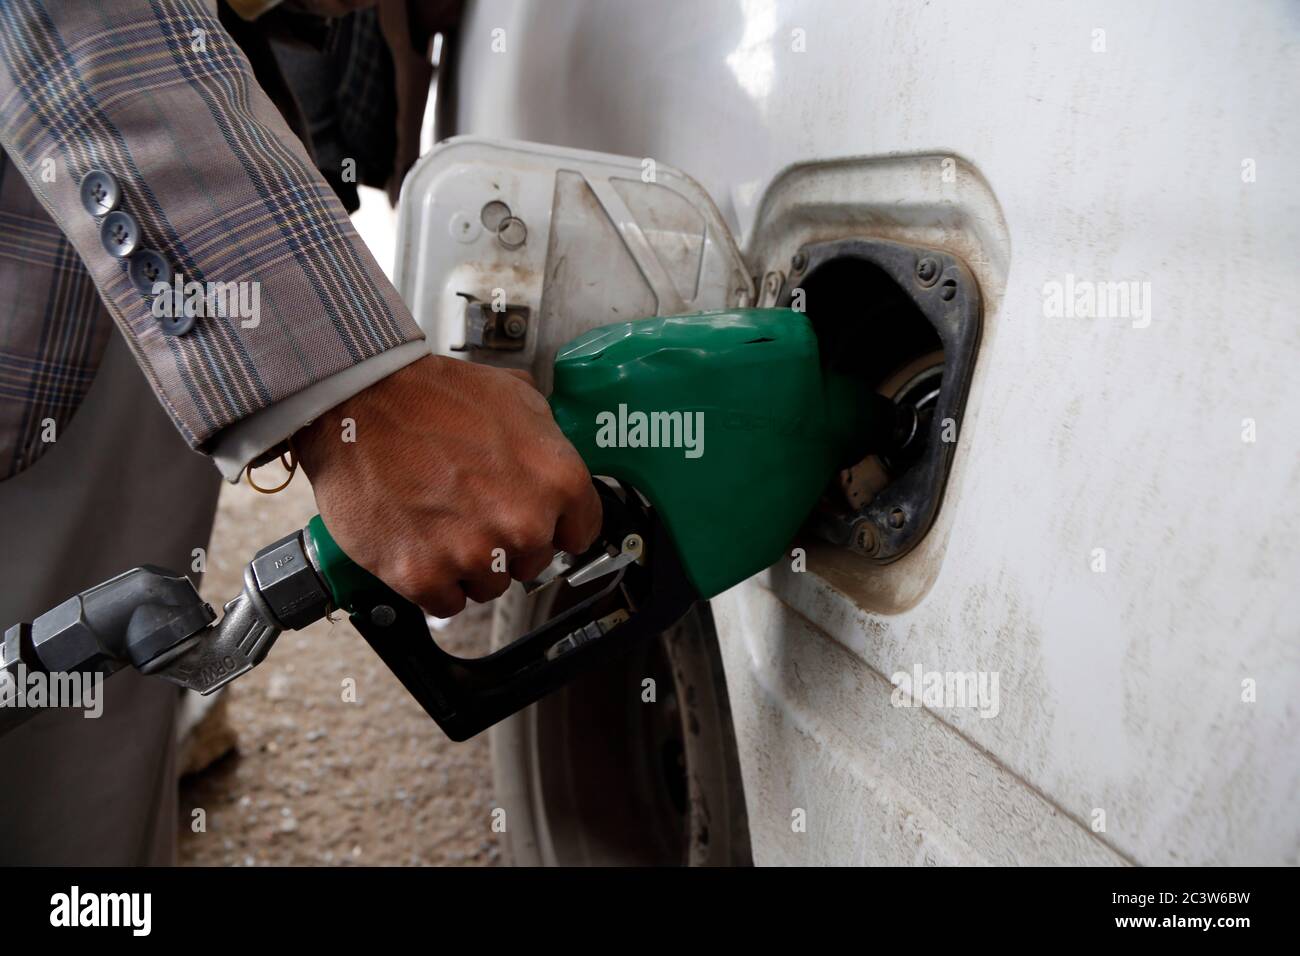 Sanaa. 22 de junio de 2020. Un trabajador rellena un coche en una gasolinera en medio de una grave escasez de combustible en Sanaa, Yemen, el 22 de junio de 2020. La mayoría de las estaciones de combustible en Sanaa, capital de los hutíes yemenitas, se secaron el domingo después de una escasez de combustible de dos semanas en toda la ciudad, dijeron las autoridades locales y los residentes. Solo algunas bombas de combustible suministran gasolina y diésel a los vehículos que se alinean en largas colas. Crédito: Xinhua/Alamy Live News Foto de stock